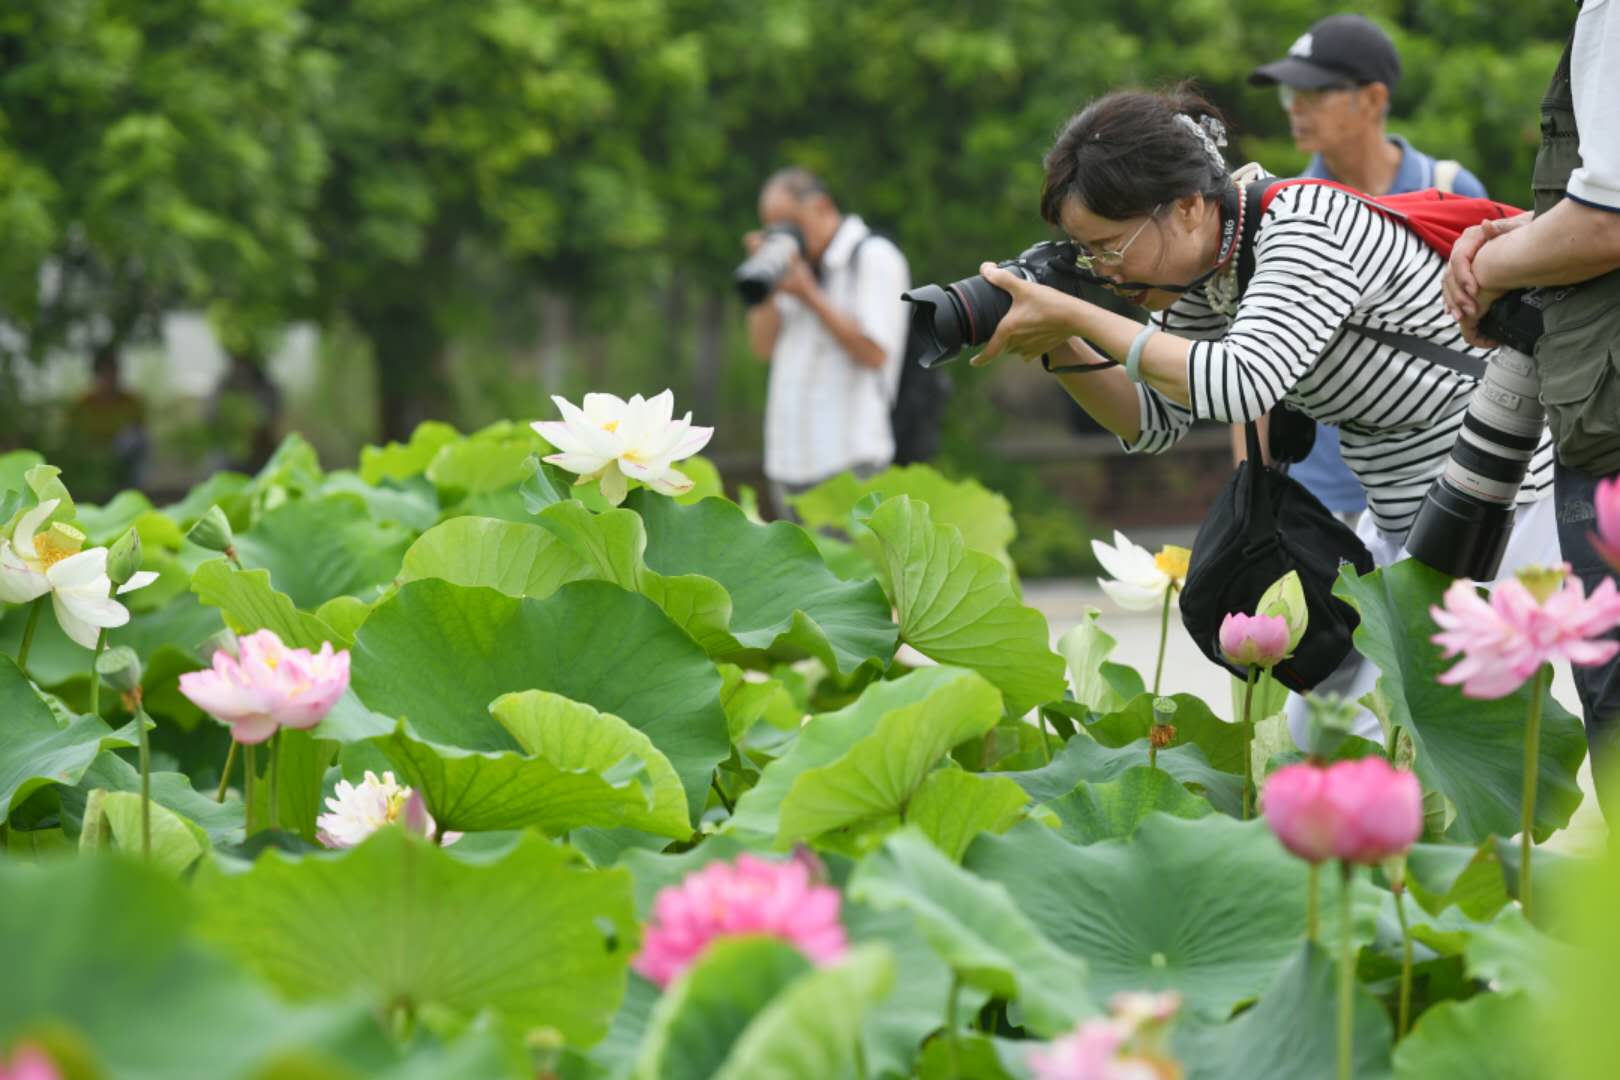 荷你同行——江城十大经典赏荷线路Enjoy Your Stay in Wuhan with the Lotus — Top Ten Lotus ...